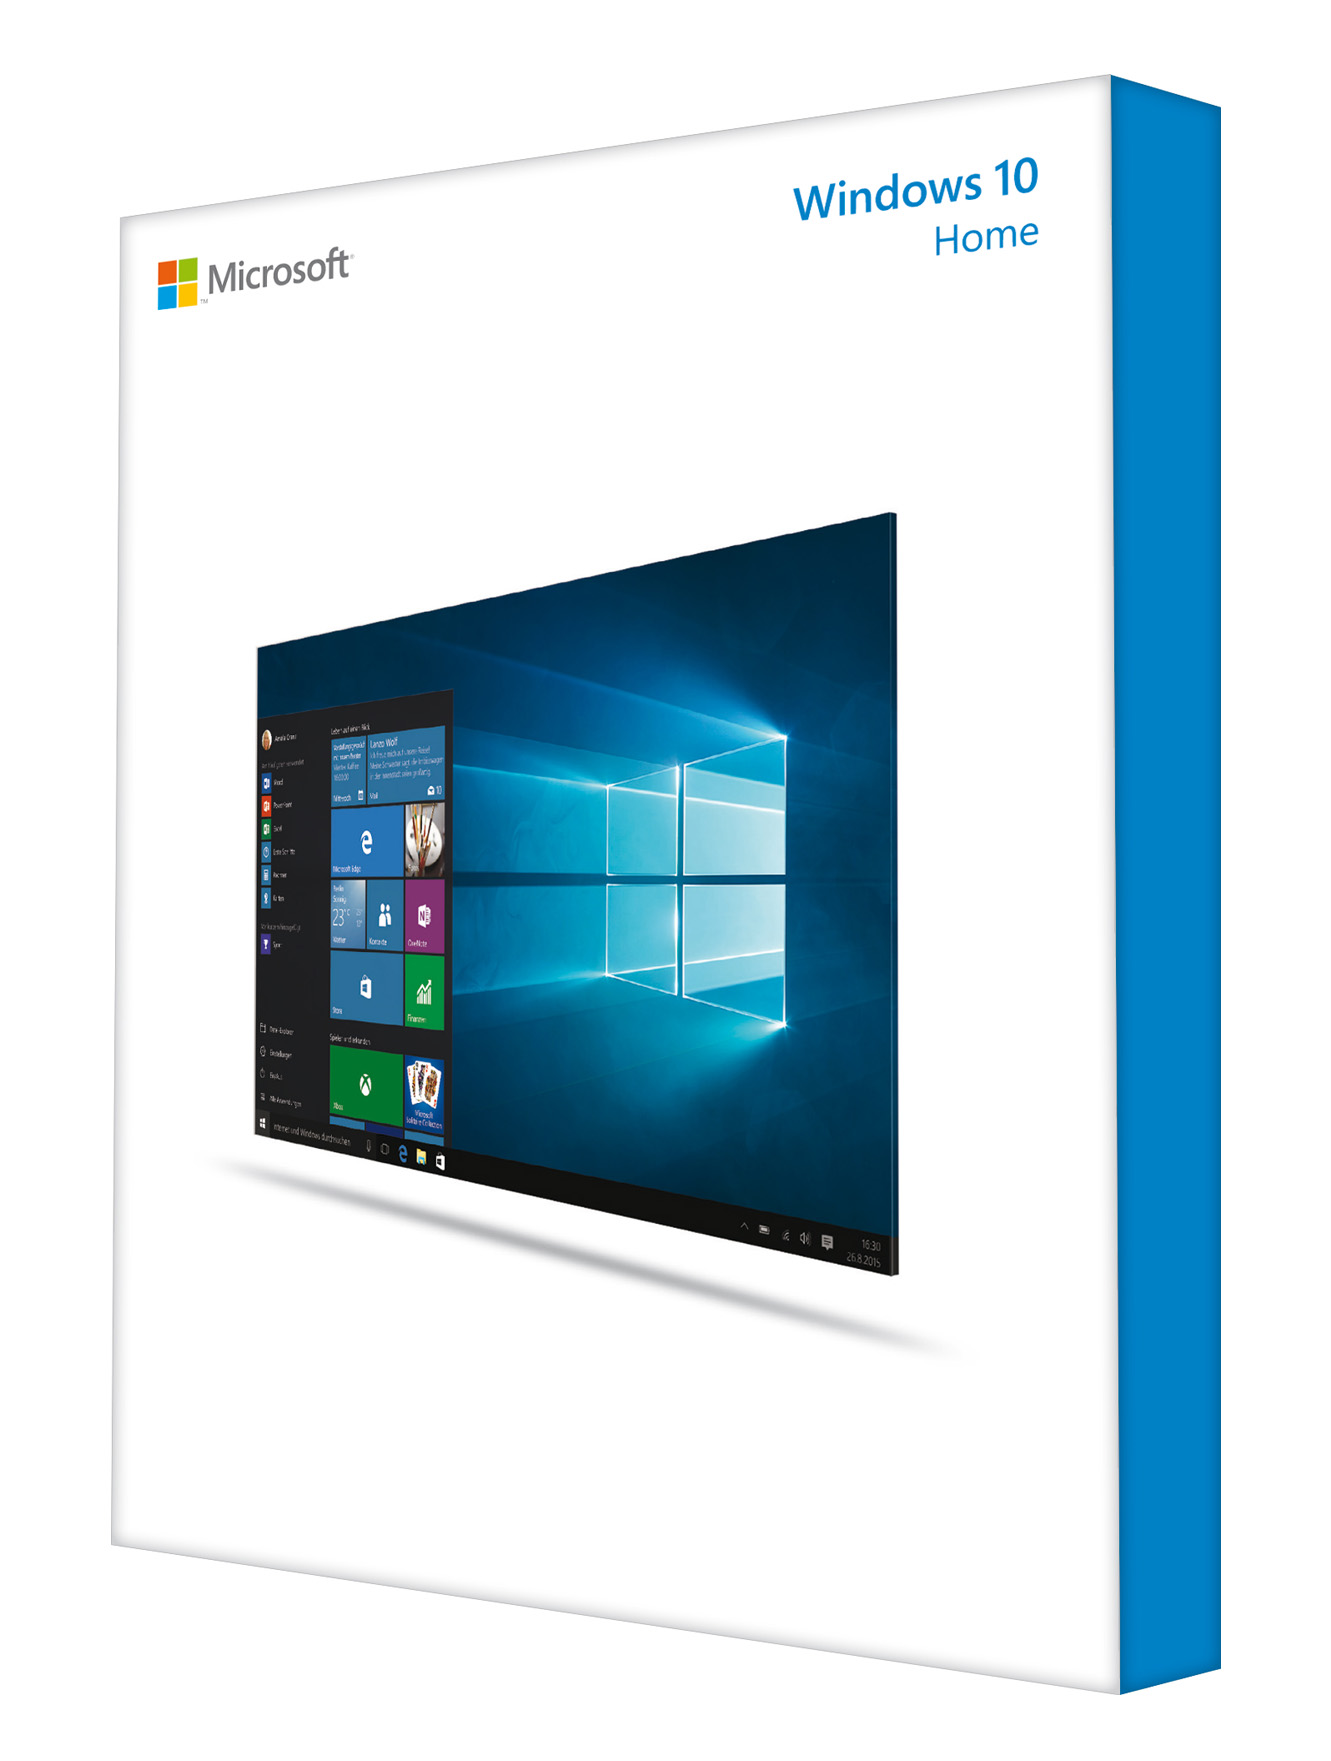 Bundesverwaltung führt Windows 10 ein